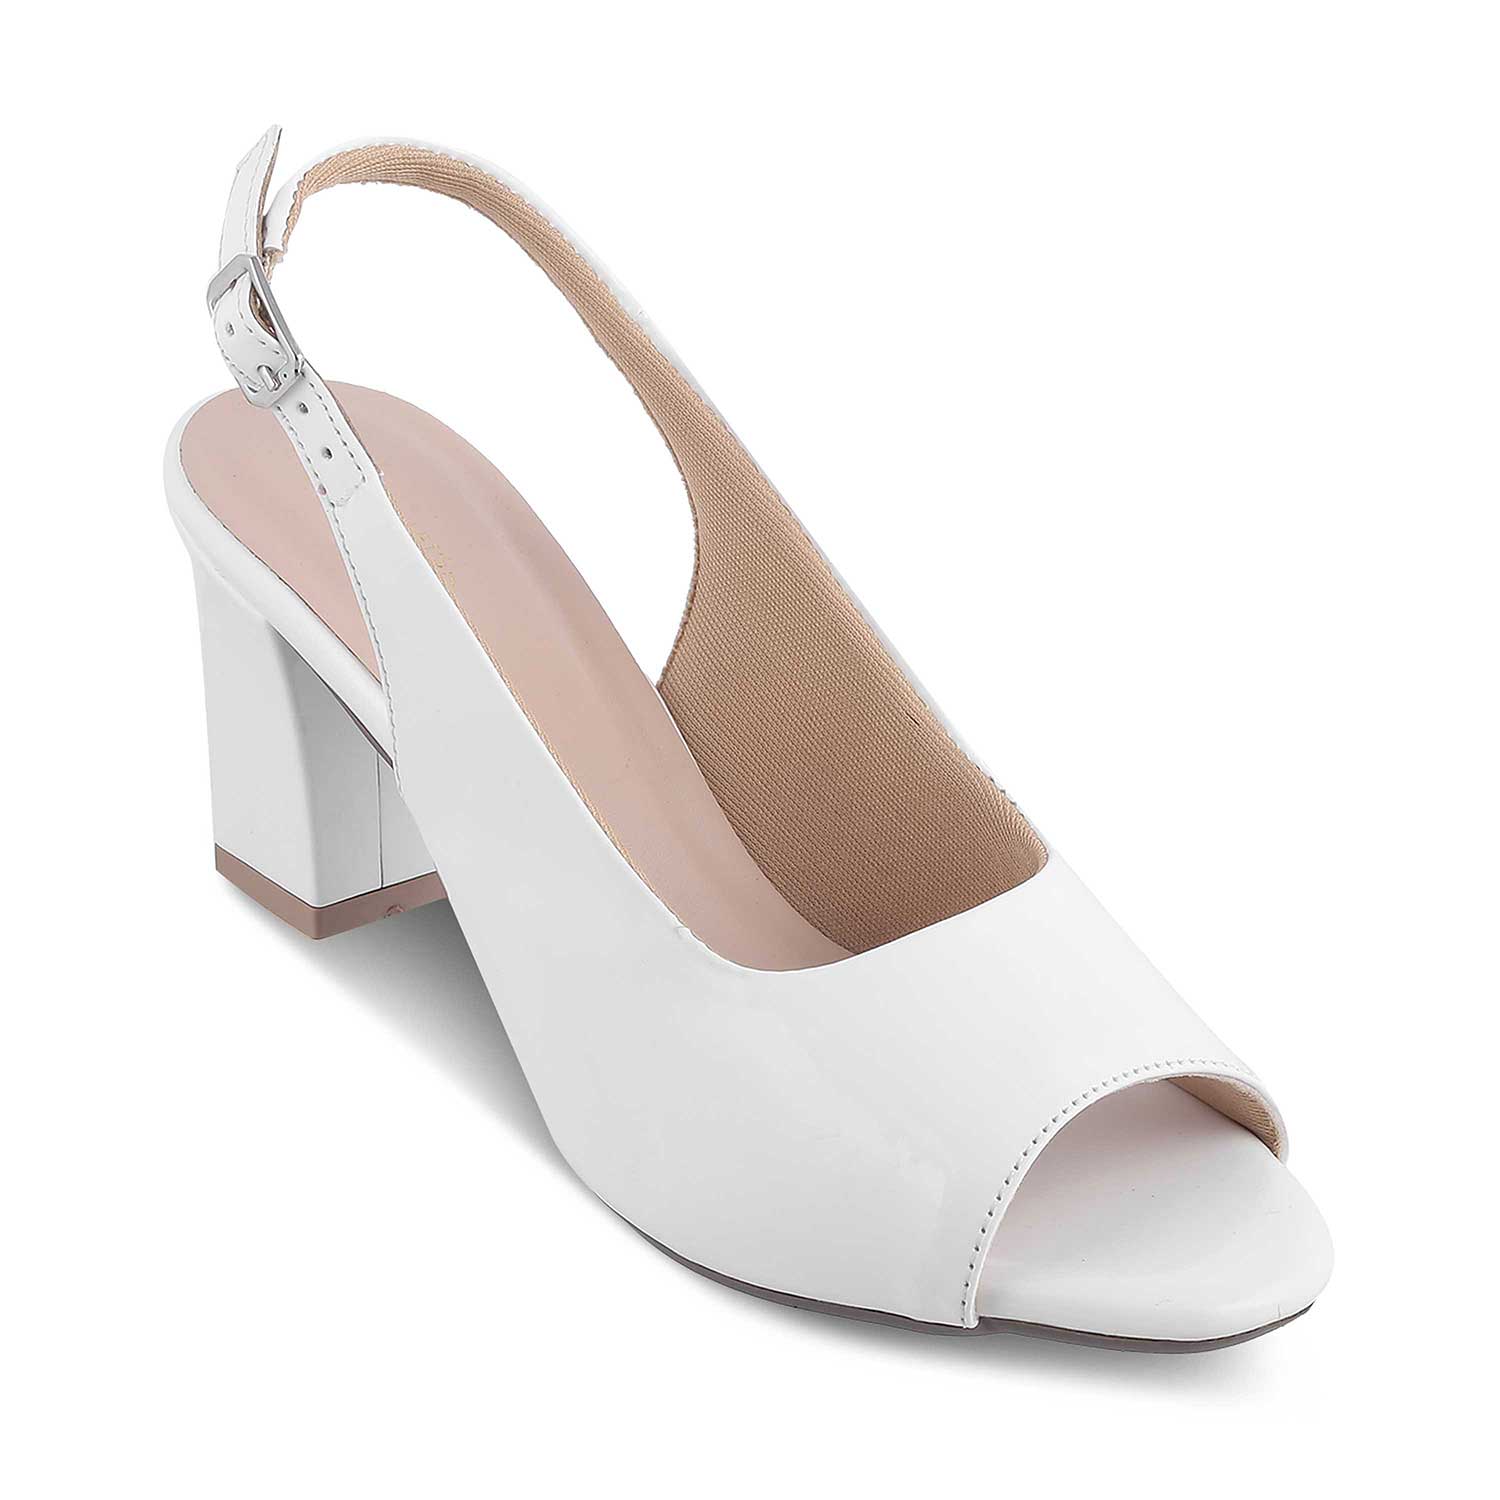 The Woo White Women's Dress Block Heel Sandals Tresmode - Tresmode